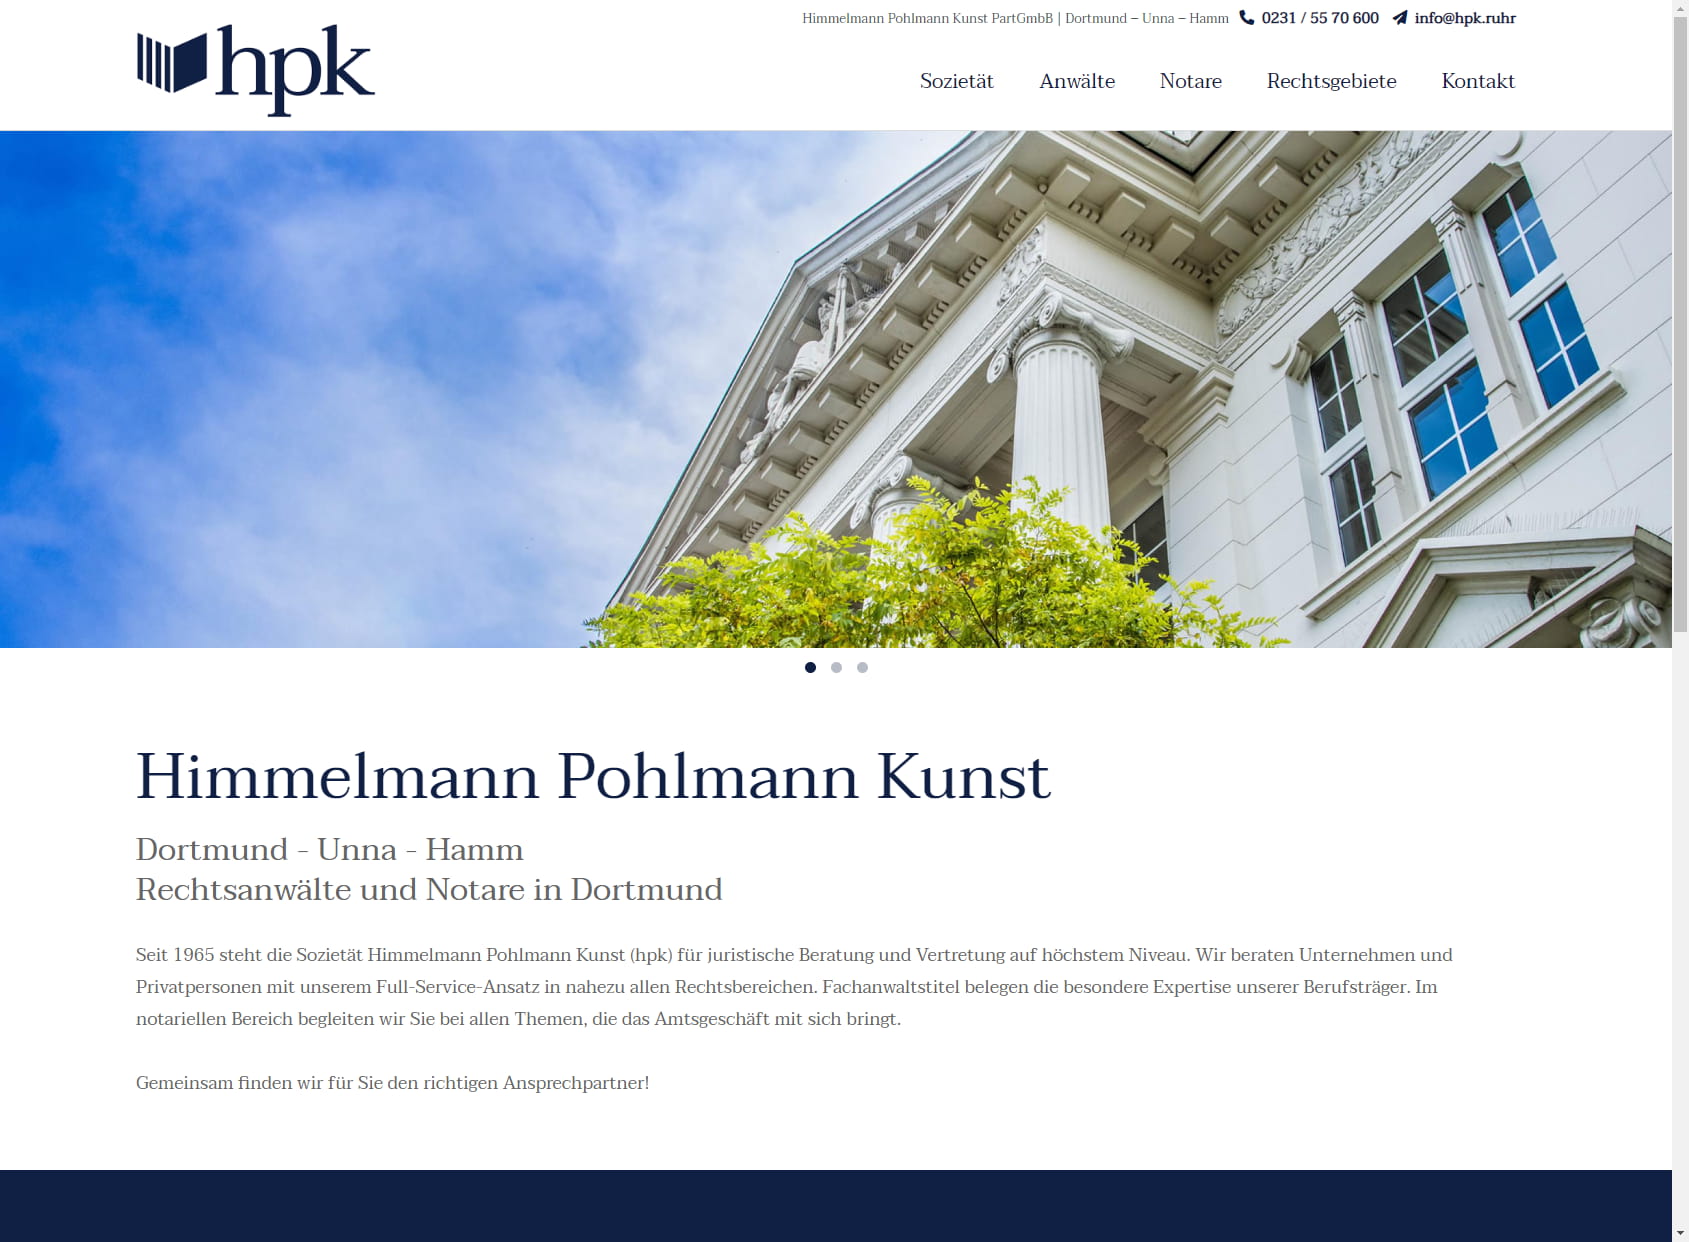 Himmelmann-Pohlmann Rechtsanwälte und Notare